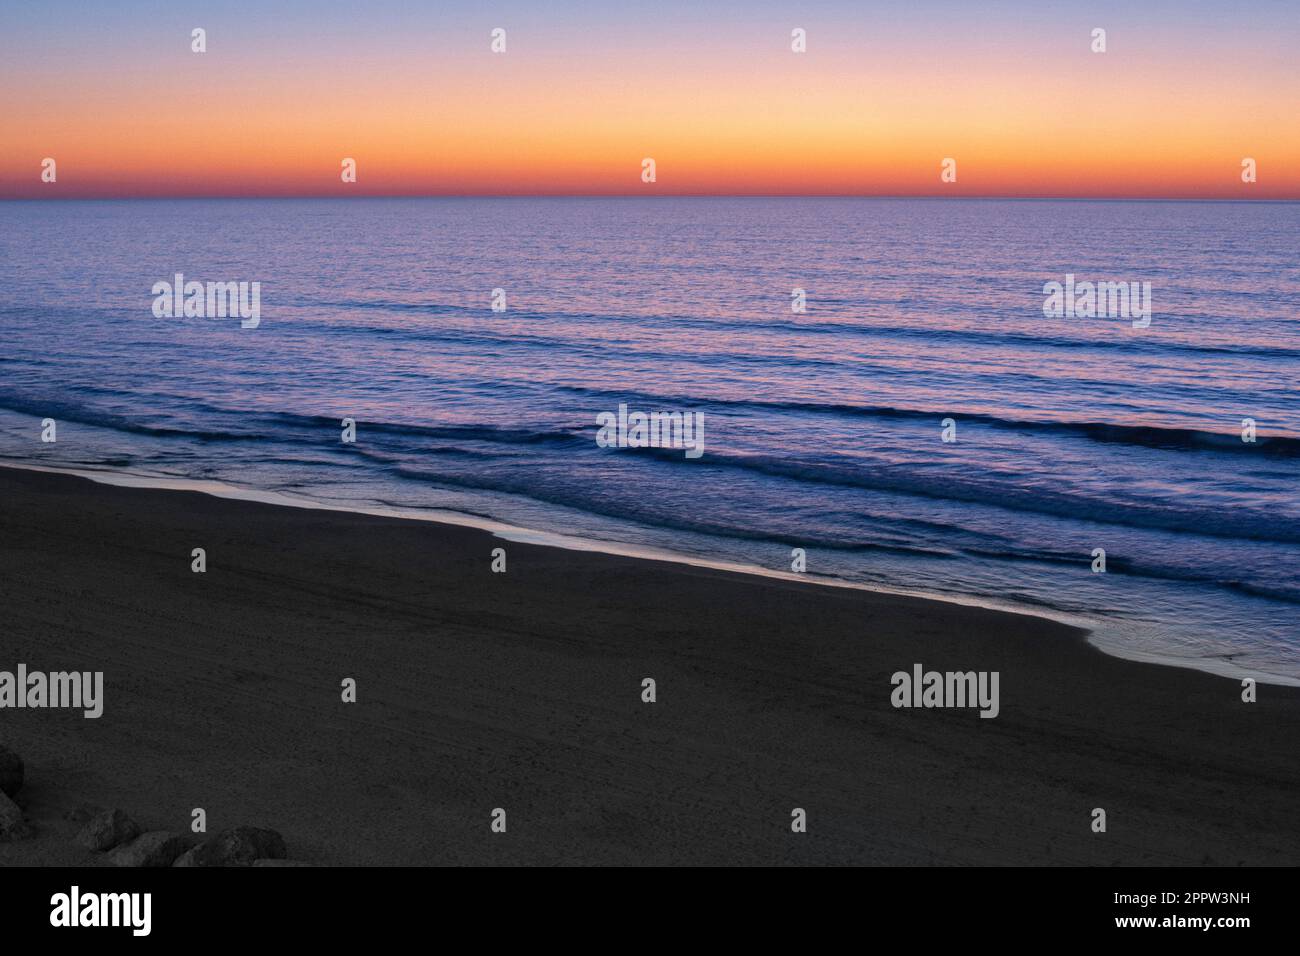 Dramatischer Sonnenuntergang über der ruhigen Meereslandschaft, bat Yam, Israel Stockfoto